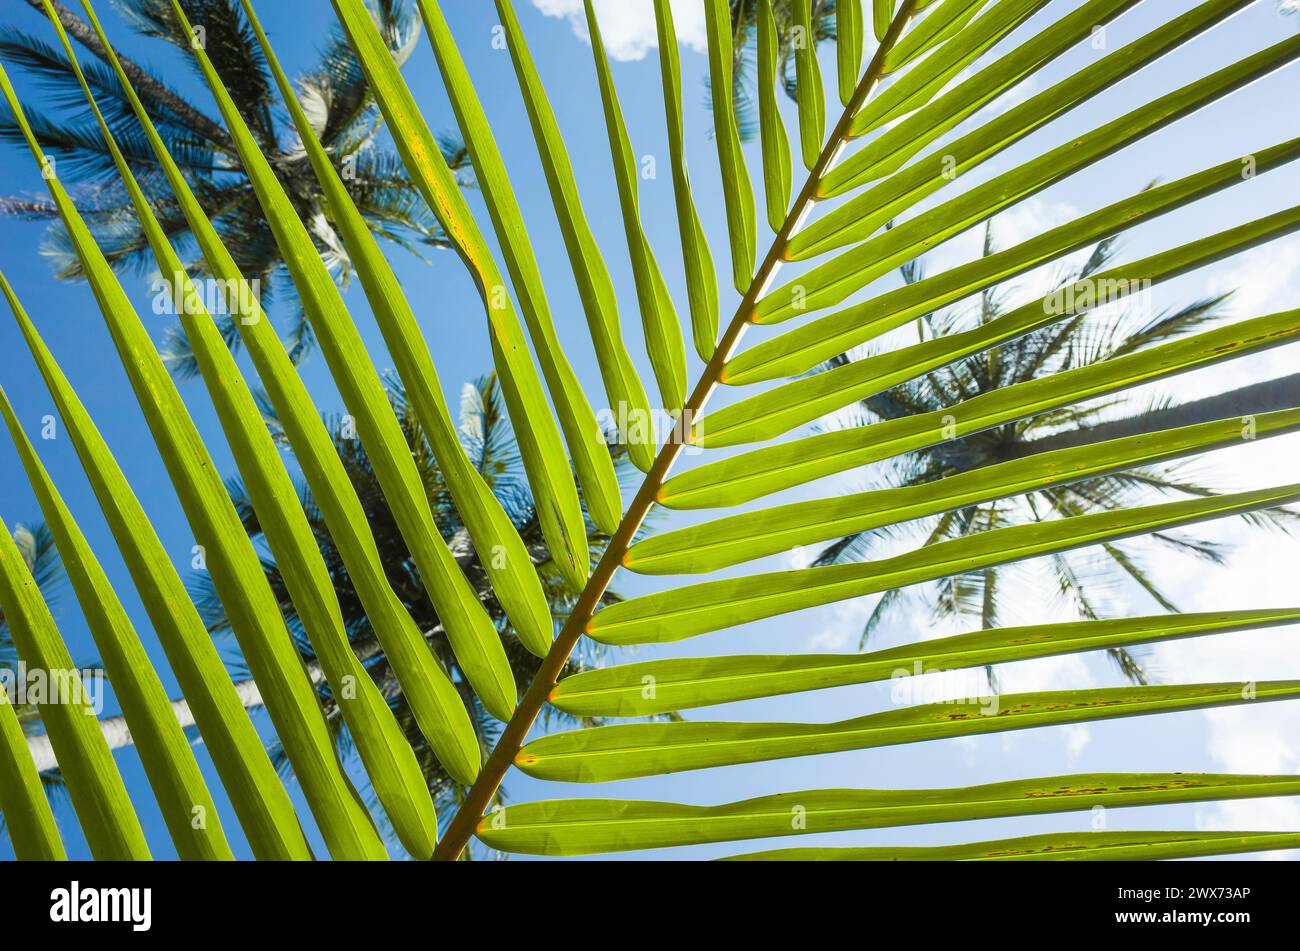 Sfondo a righe di foglie di palma, linee naturali verdi tropicali, vista dal basso verso l'alto attraverso strisce di foglie di palma sul cielo blu e sommità di palme da cocco Foto Stock